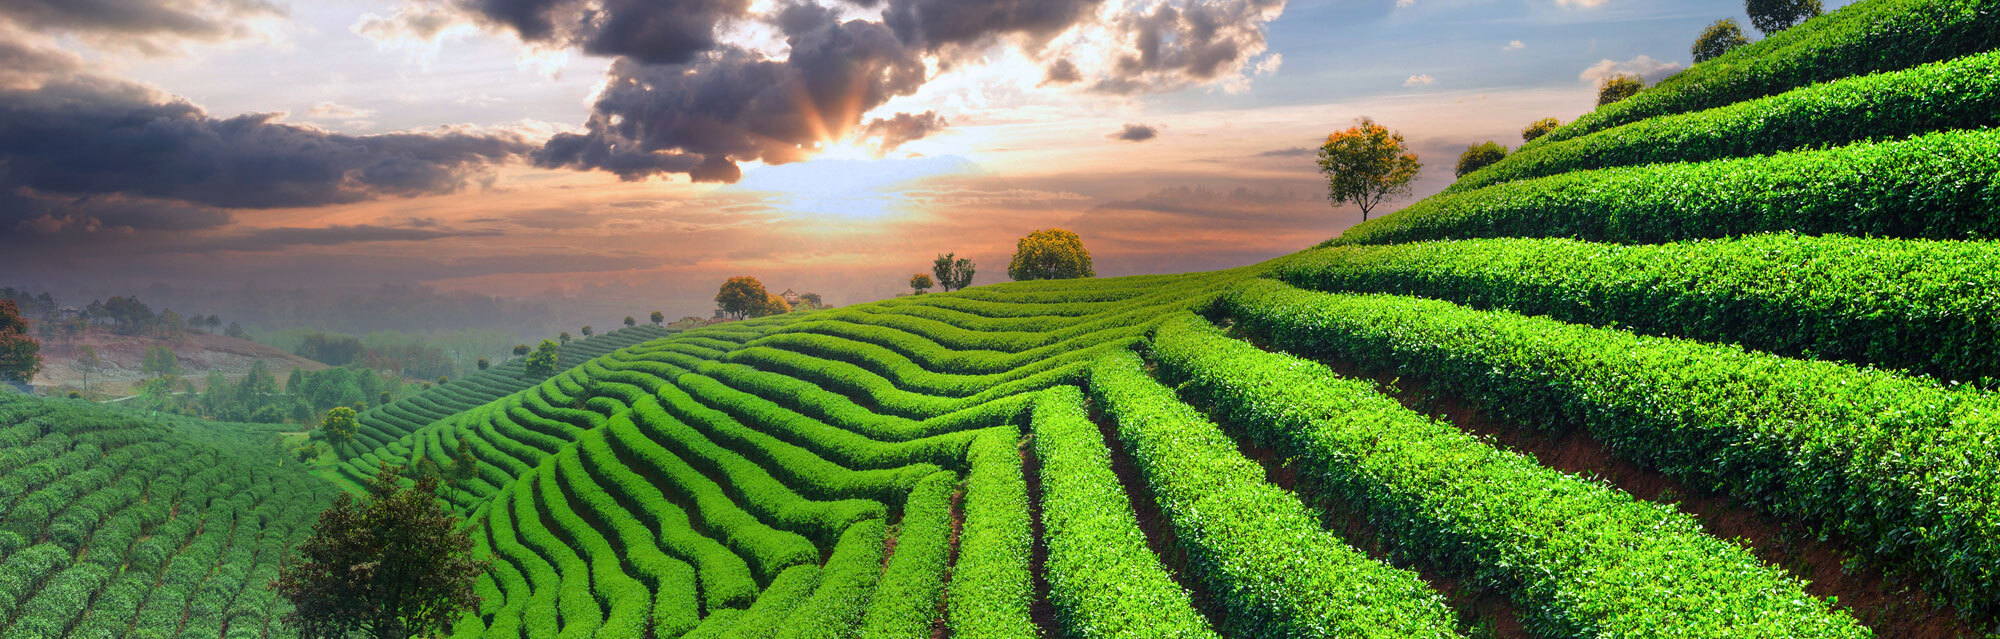 Tea Plantations - Desktop